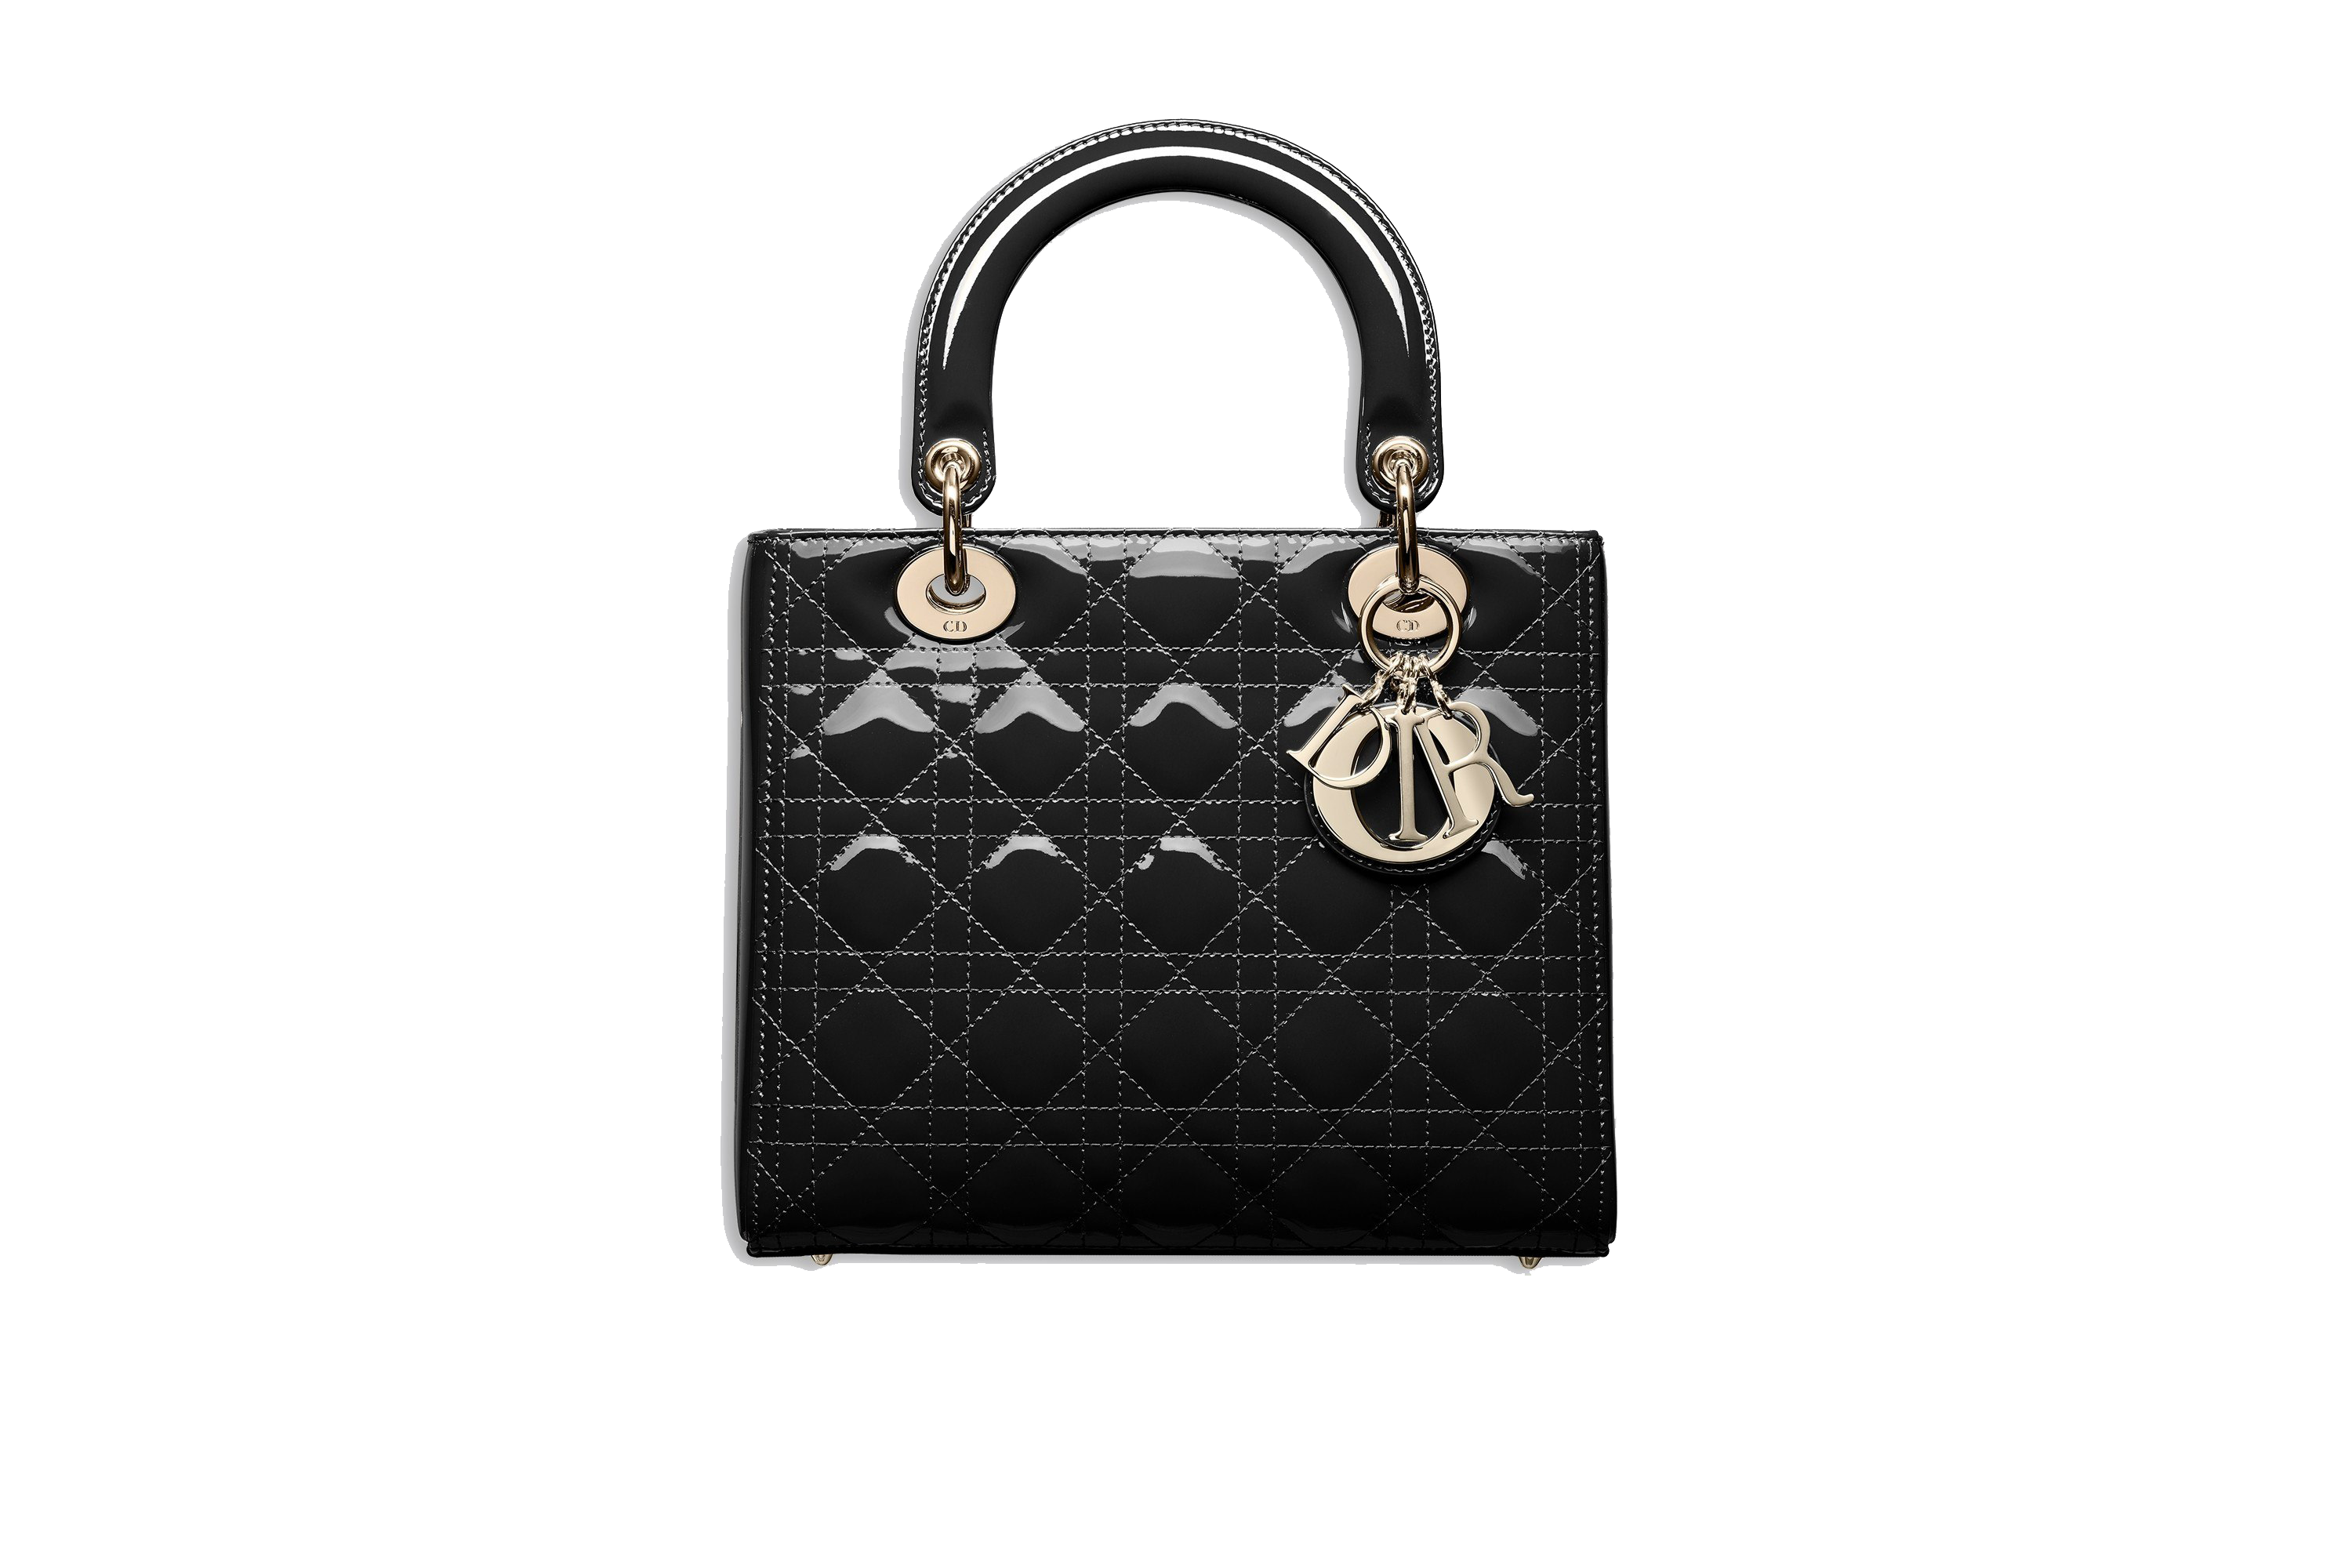 Black Dior Bag PNG Image Background